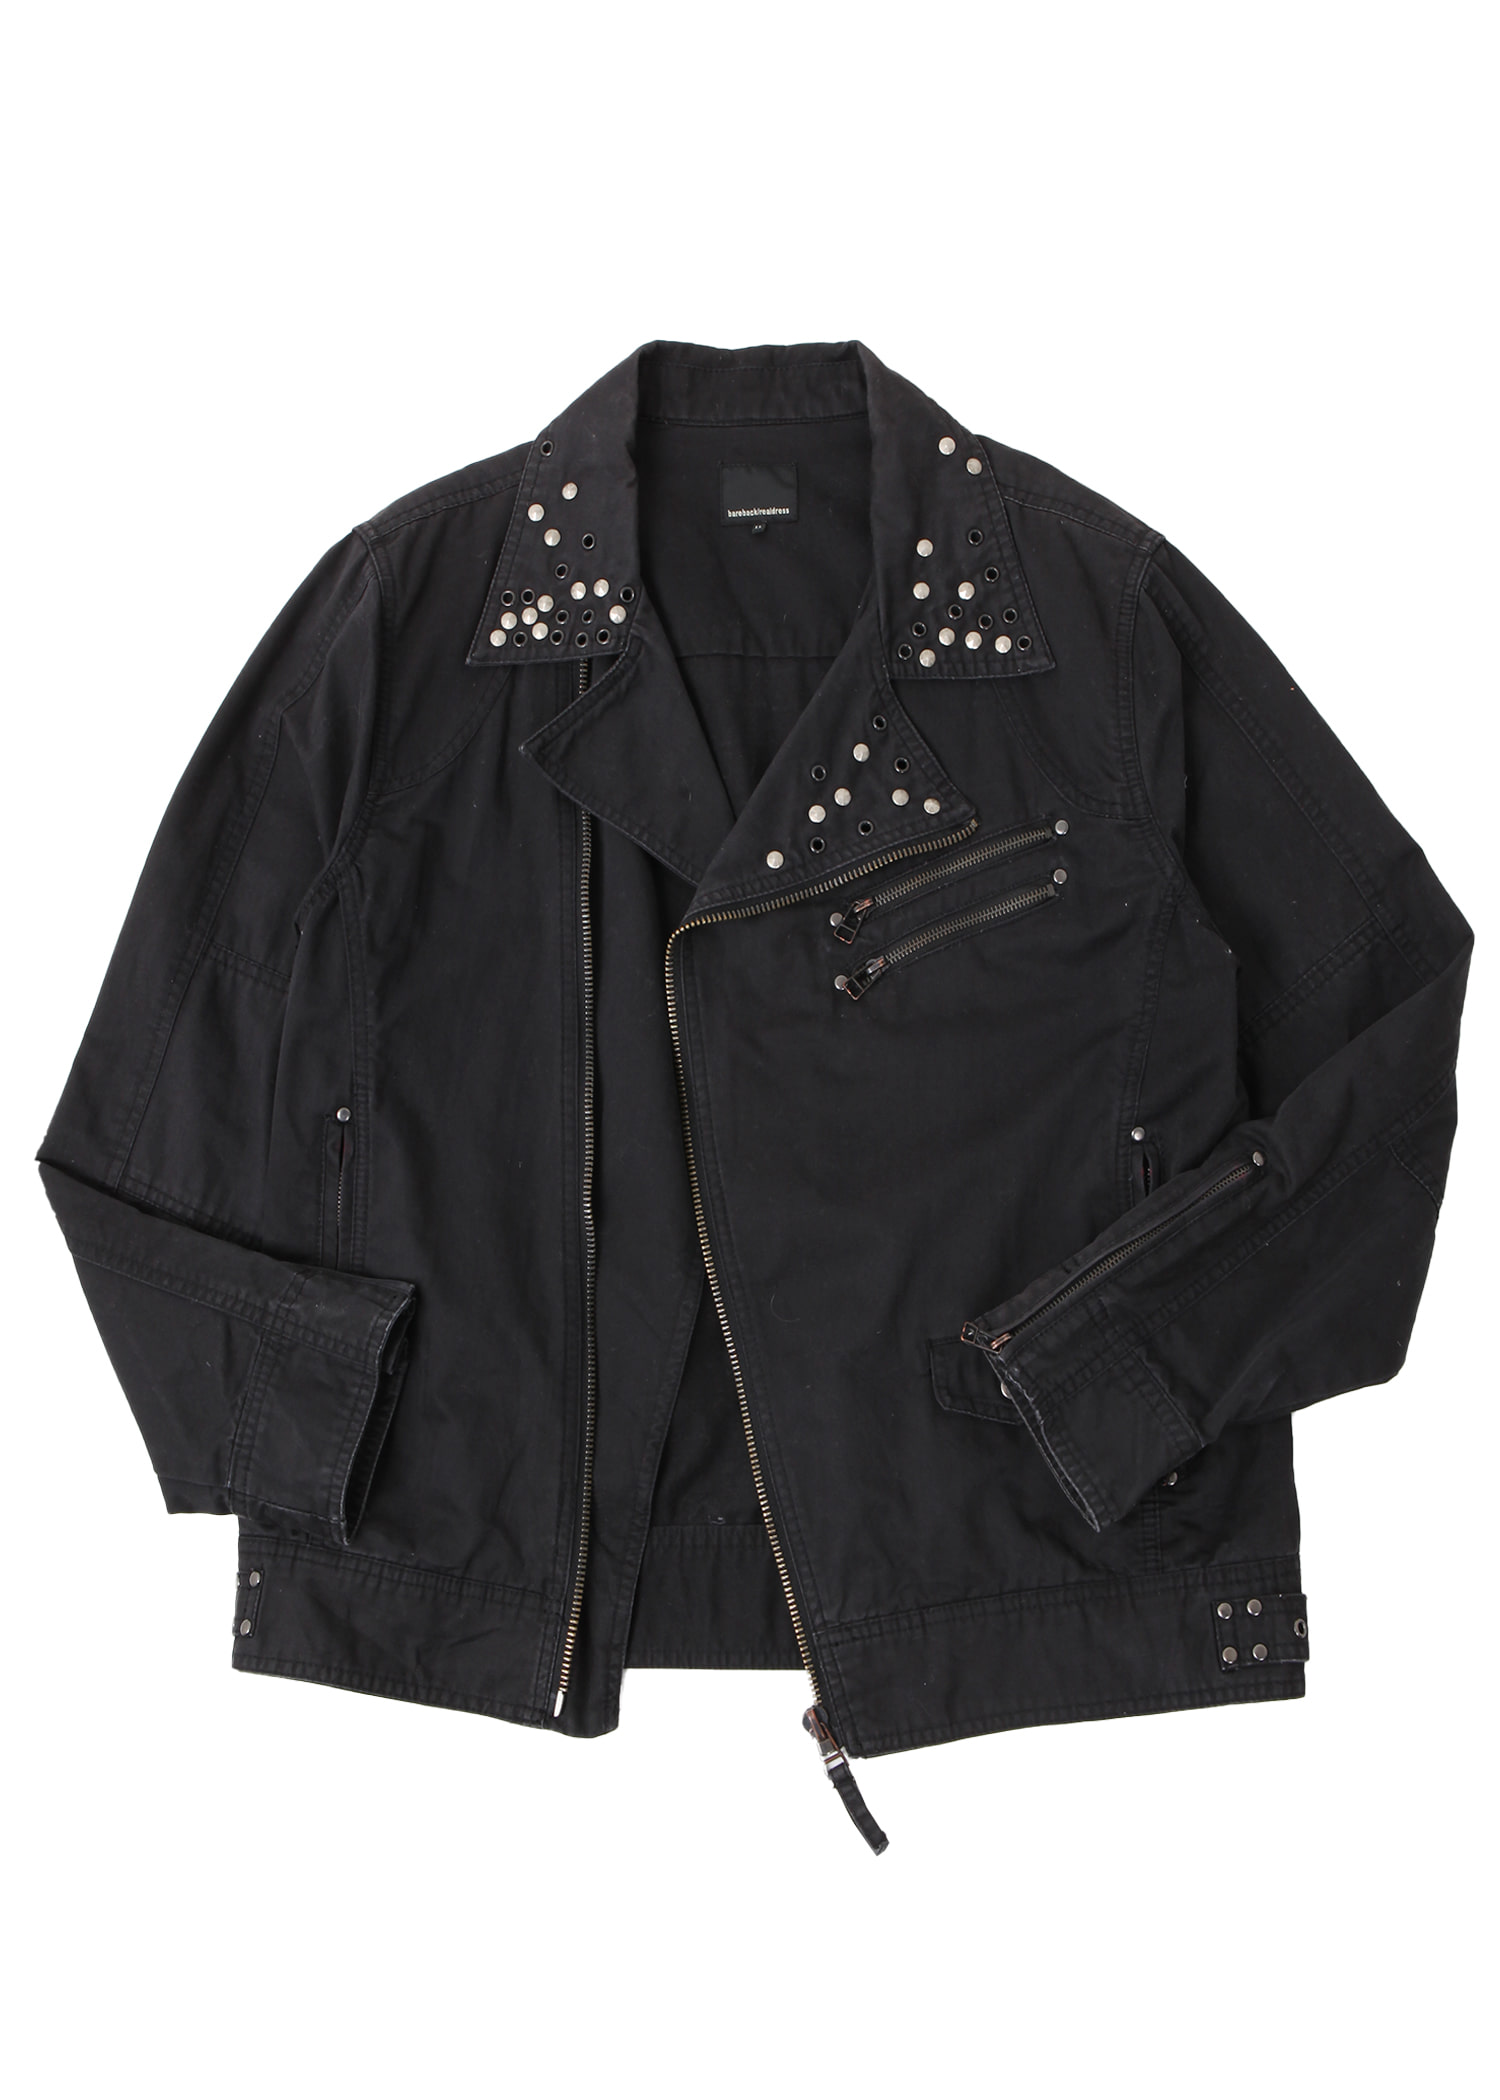 select vintage : stud rider jacket